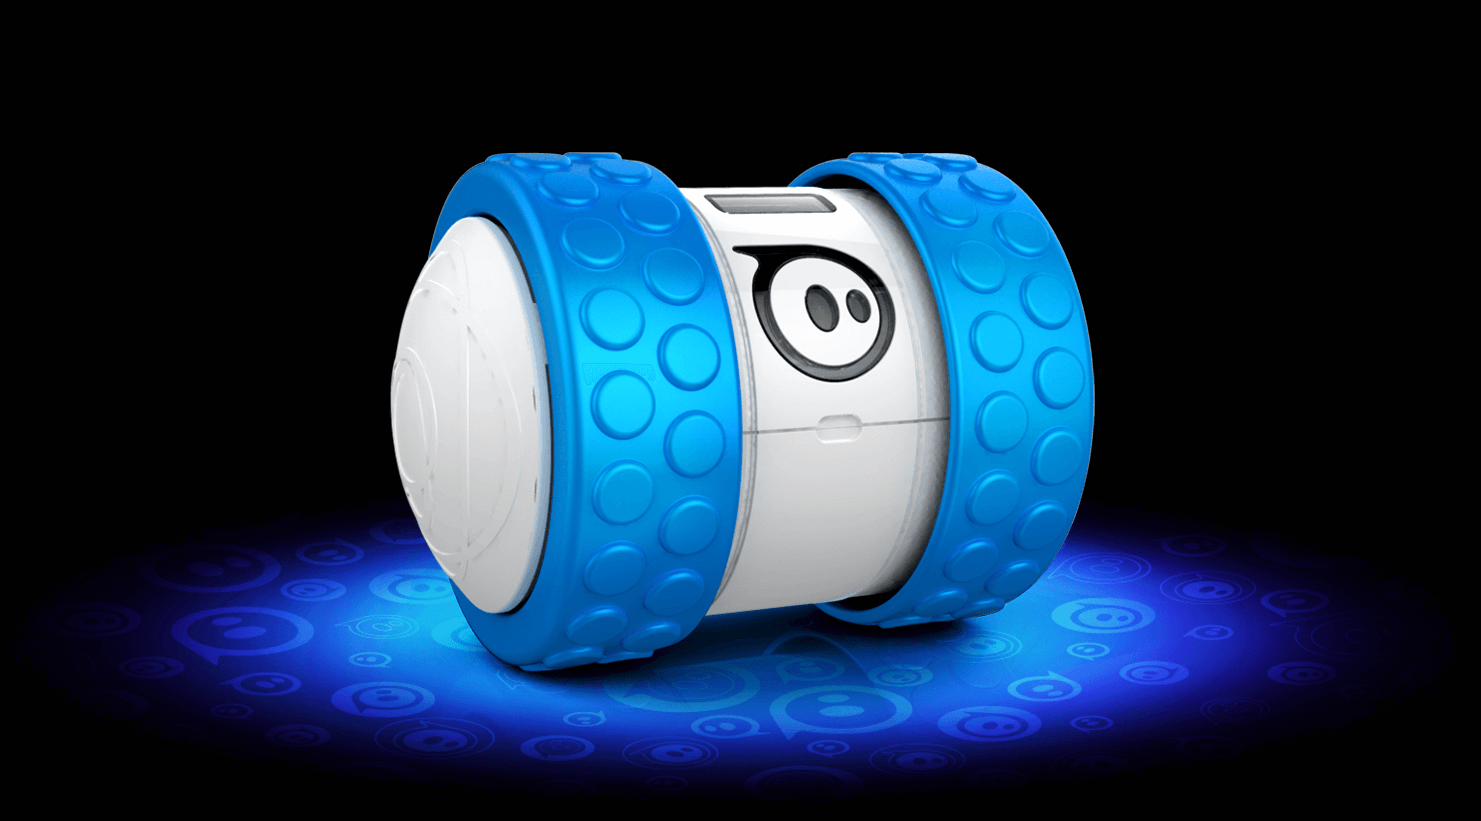 Компанія Sphero представила громадськості свою нову розробку - крихітного робота Ollie, управляти яким користувач може за допомогою свого смартфона